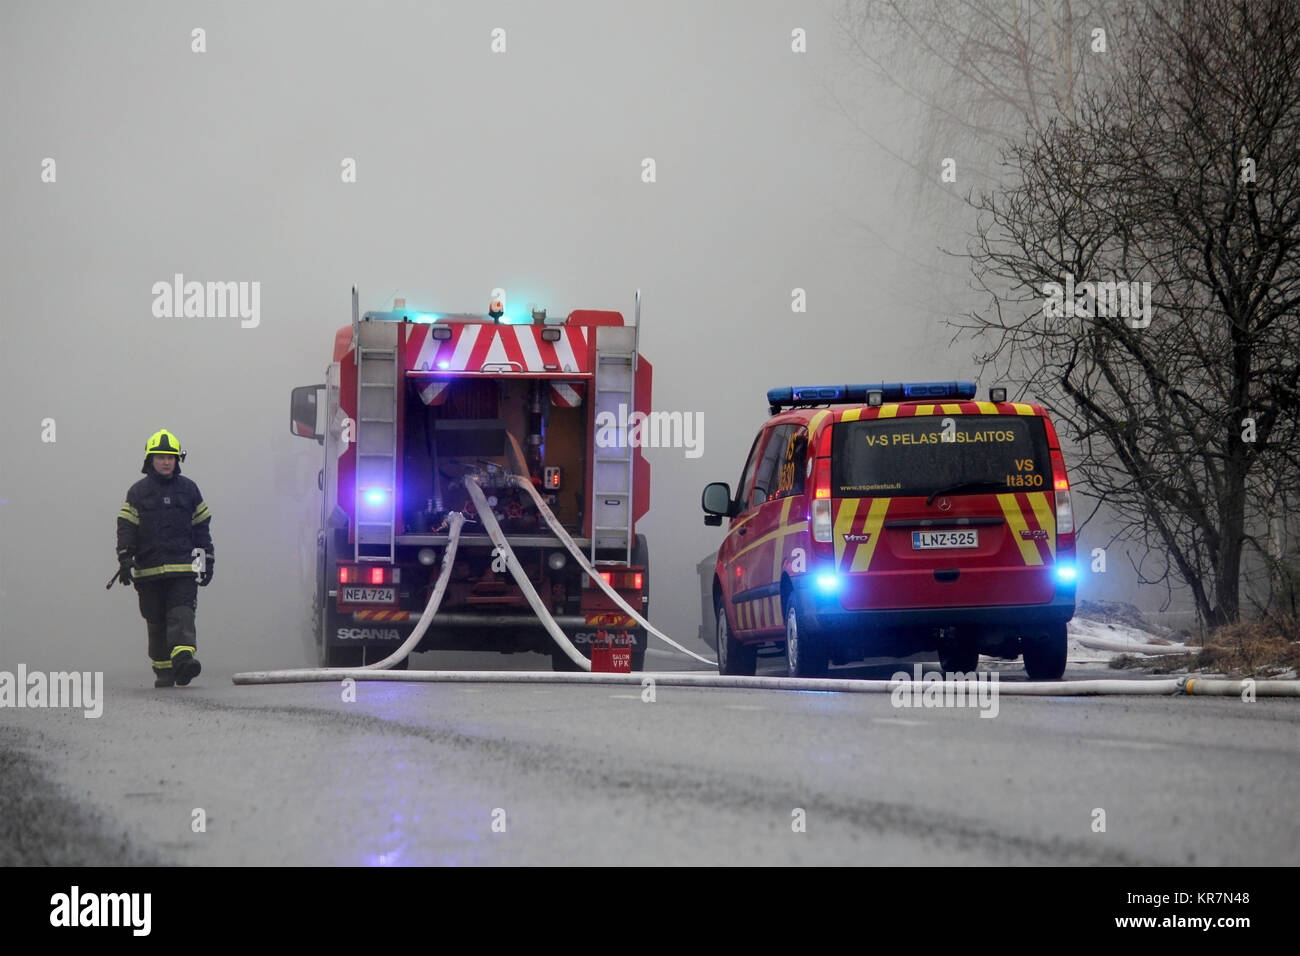 SALO, Finnland - 16. Februar 2014: Feuerwehrmann ergibt sich aus starker Rauchentwicklung in der Feuer-Szene von Salo Zementwerk mit zwei Feuerwehrautos auf der Straße. Stockfoto